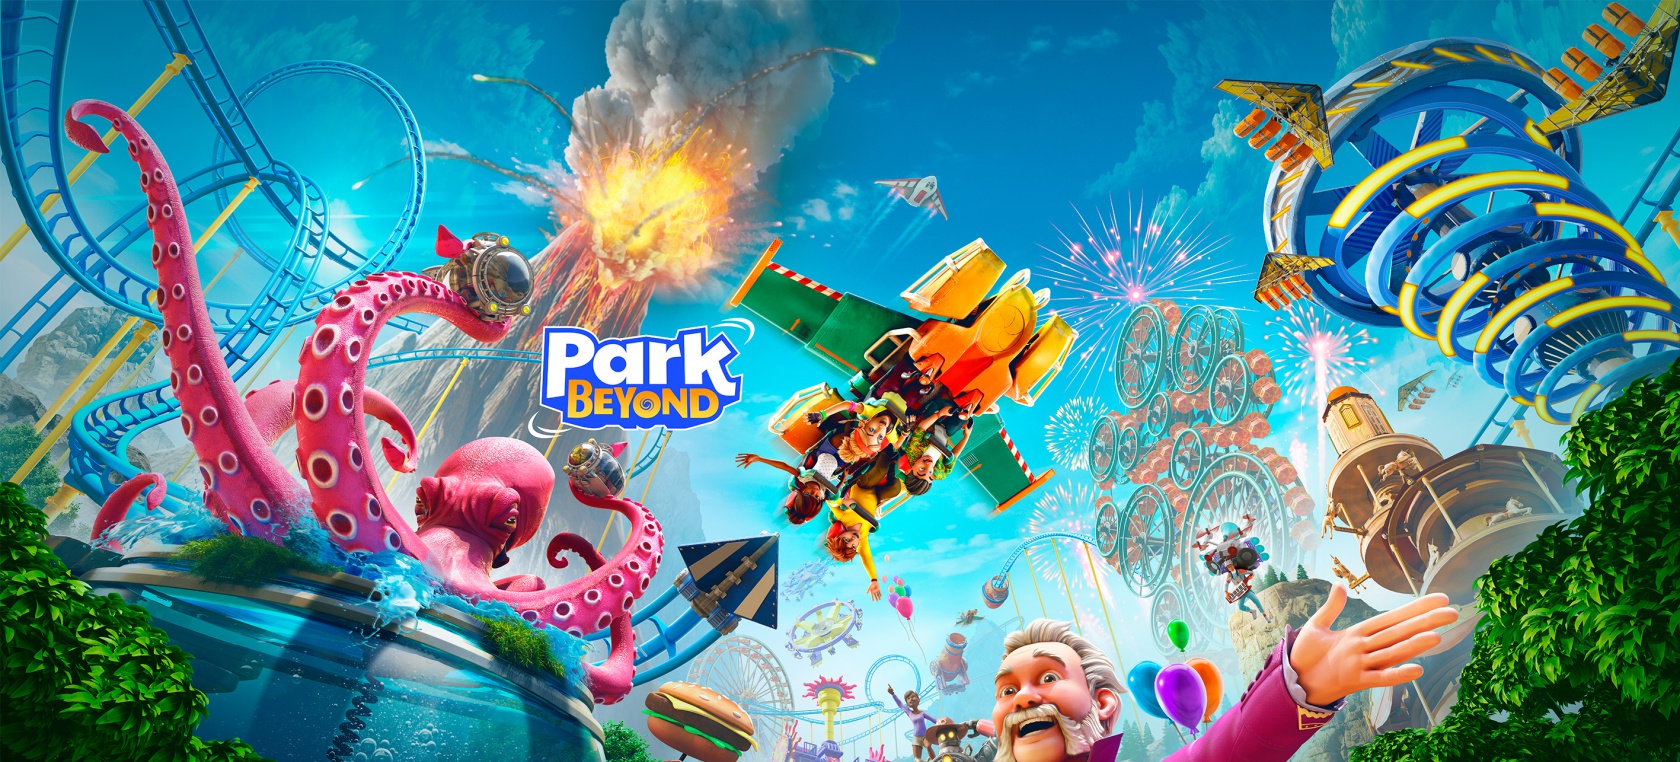 Bandai Namco: Park Beyond, jugando a tener nuestro parque de diversiones |  Tecnología | LOS40 México